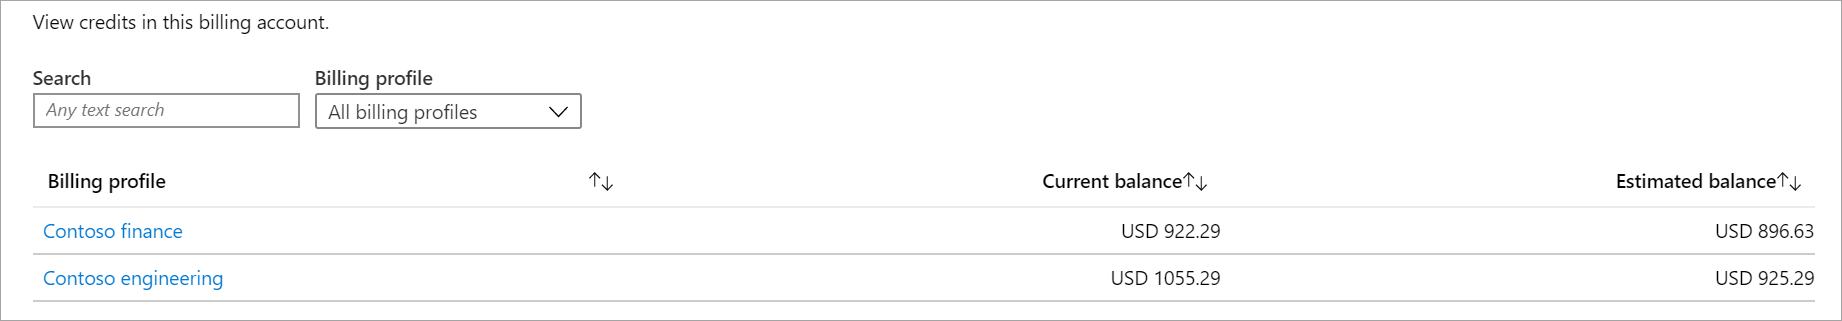 Captura de pantalla que muestra la lista de crédito de una cuenta de facturación.